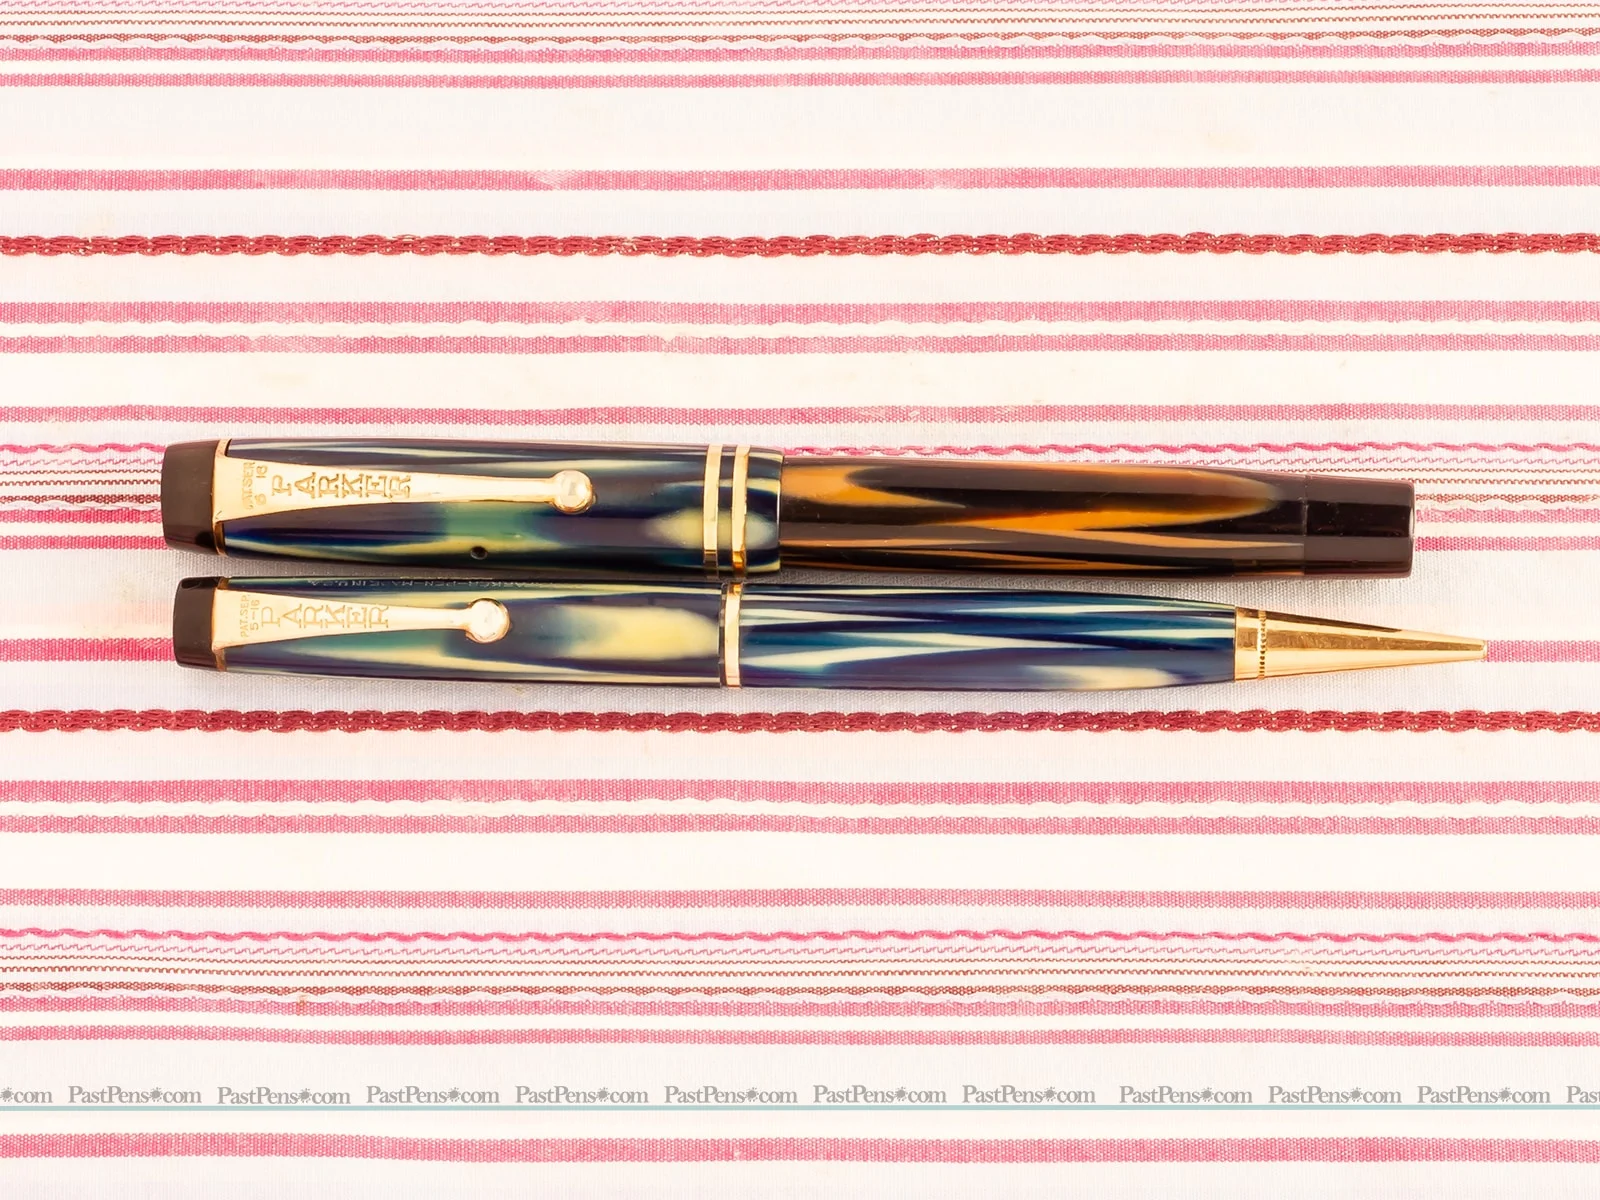 parker duofold true blue modernistic fountain pen pencil set vintage pk157 pens